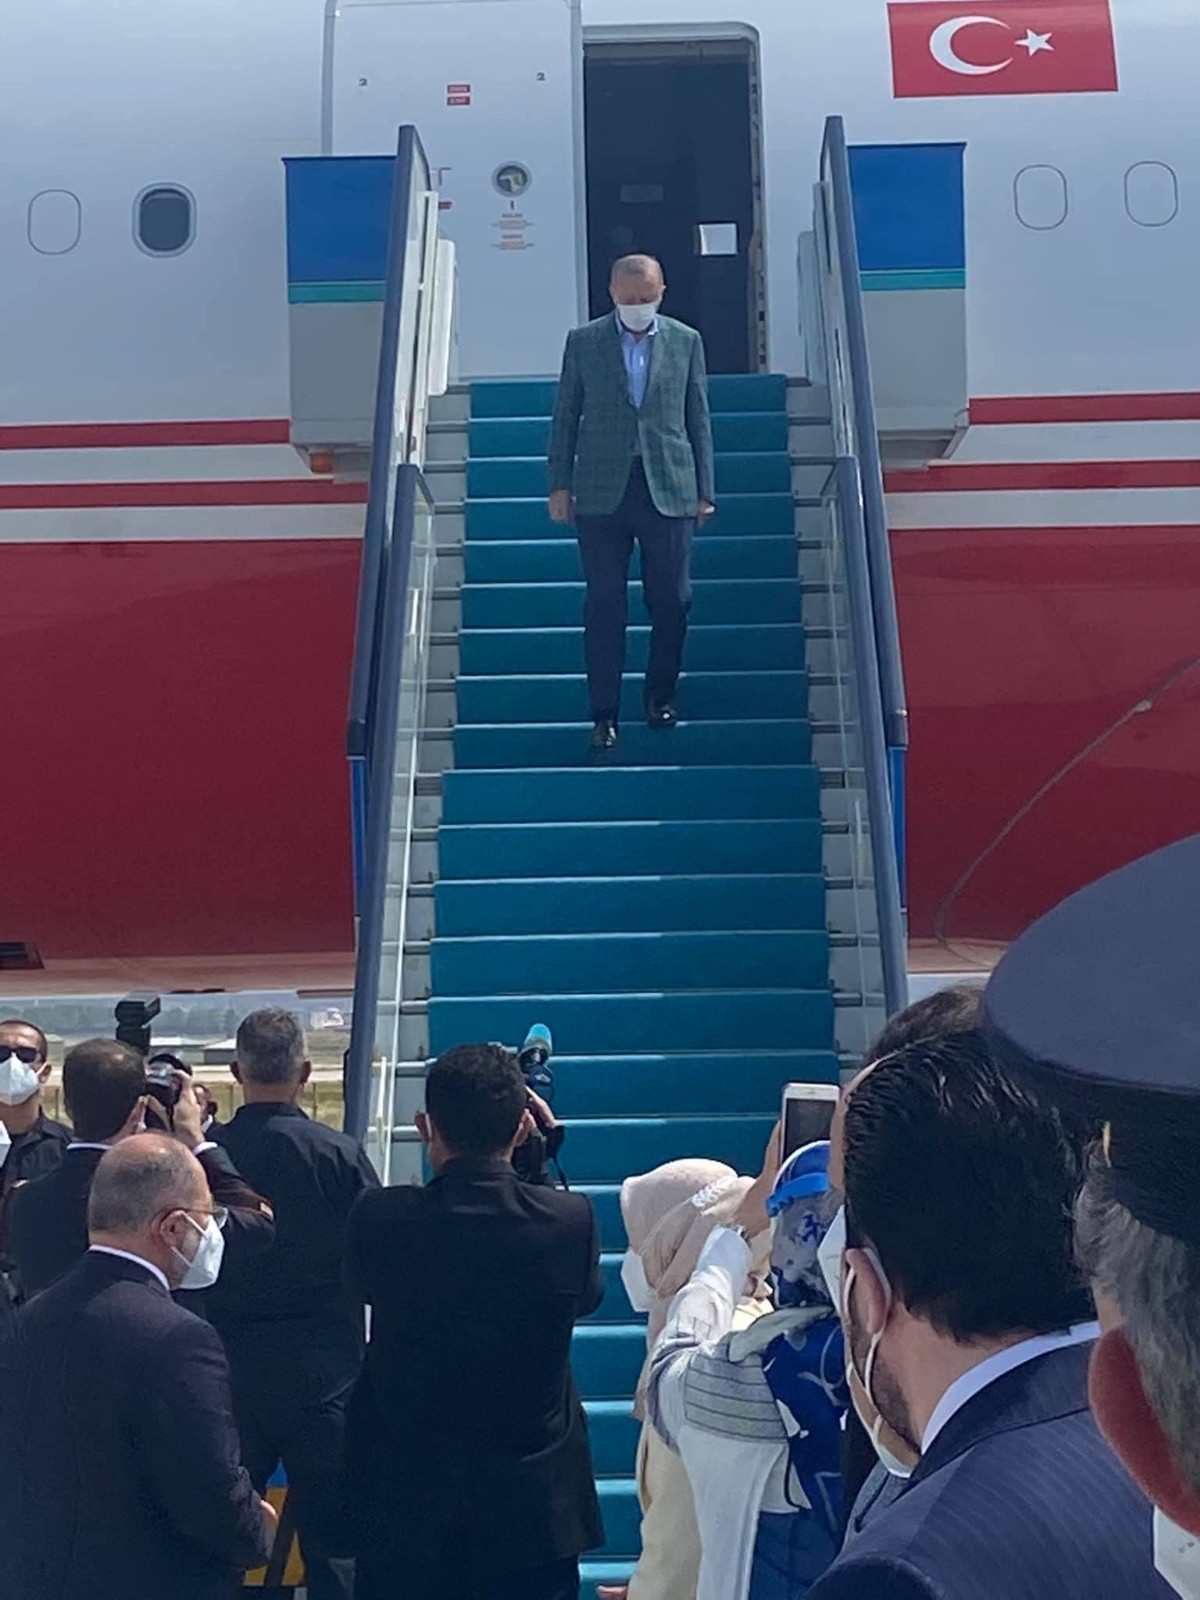 Cumhurbaşkanı Erdoğan, Erzurum’da